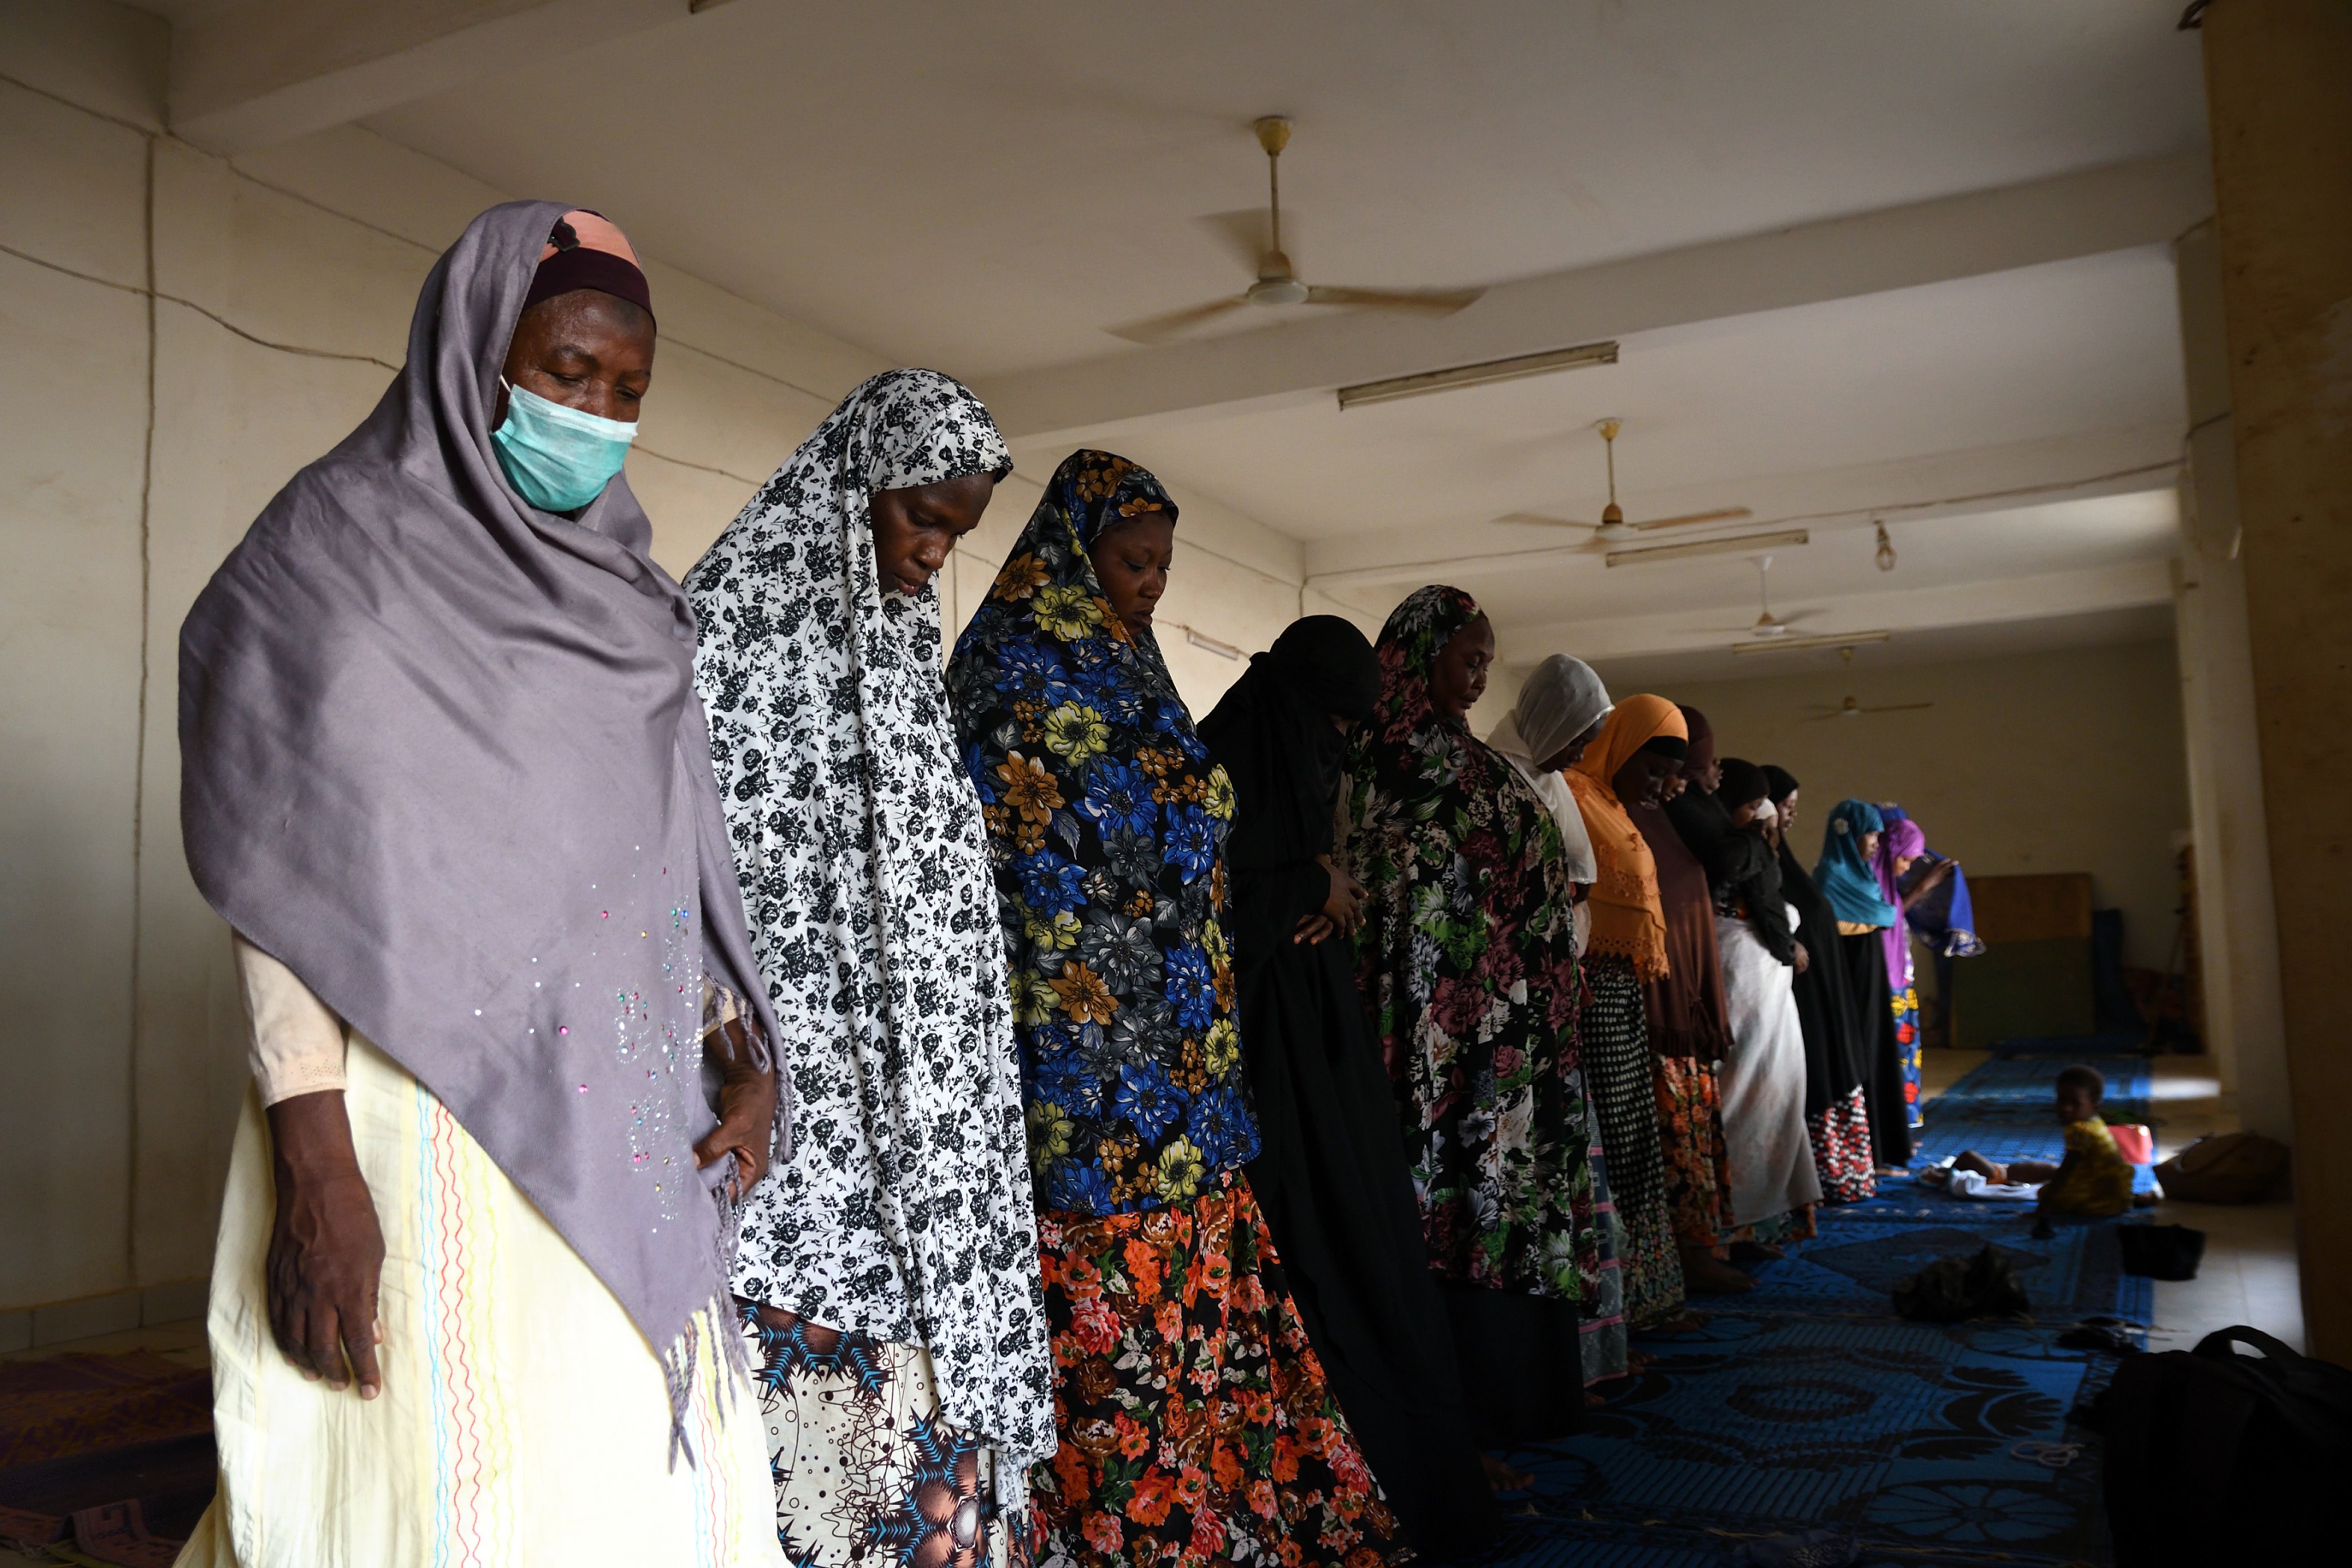 Las mujeres rezan en una mezquita durante el mes sagrado del Ramadán, en medio de la propagación de la enfermedad del coronavirus (COVID-19) en Uagadugú, Burkina Faso